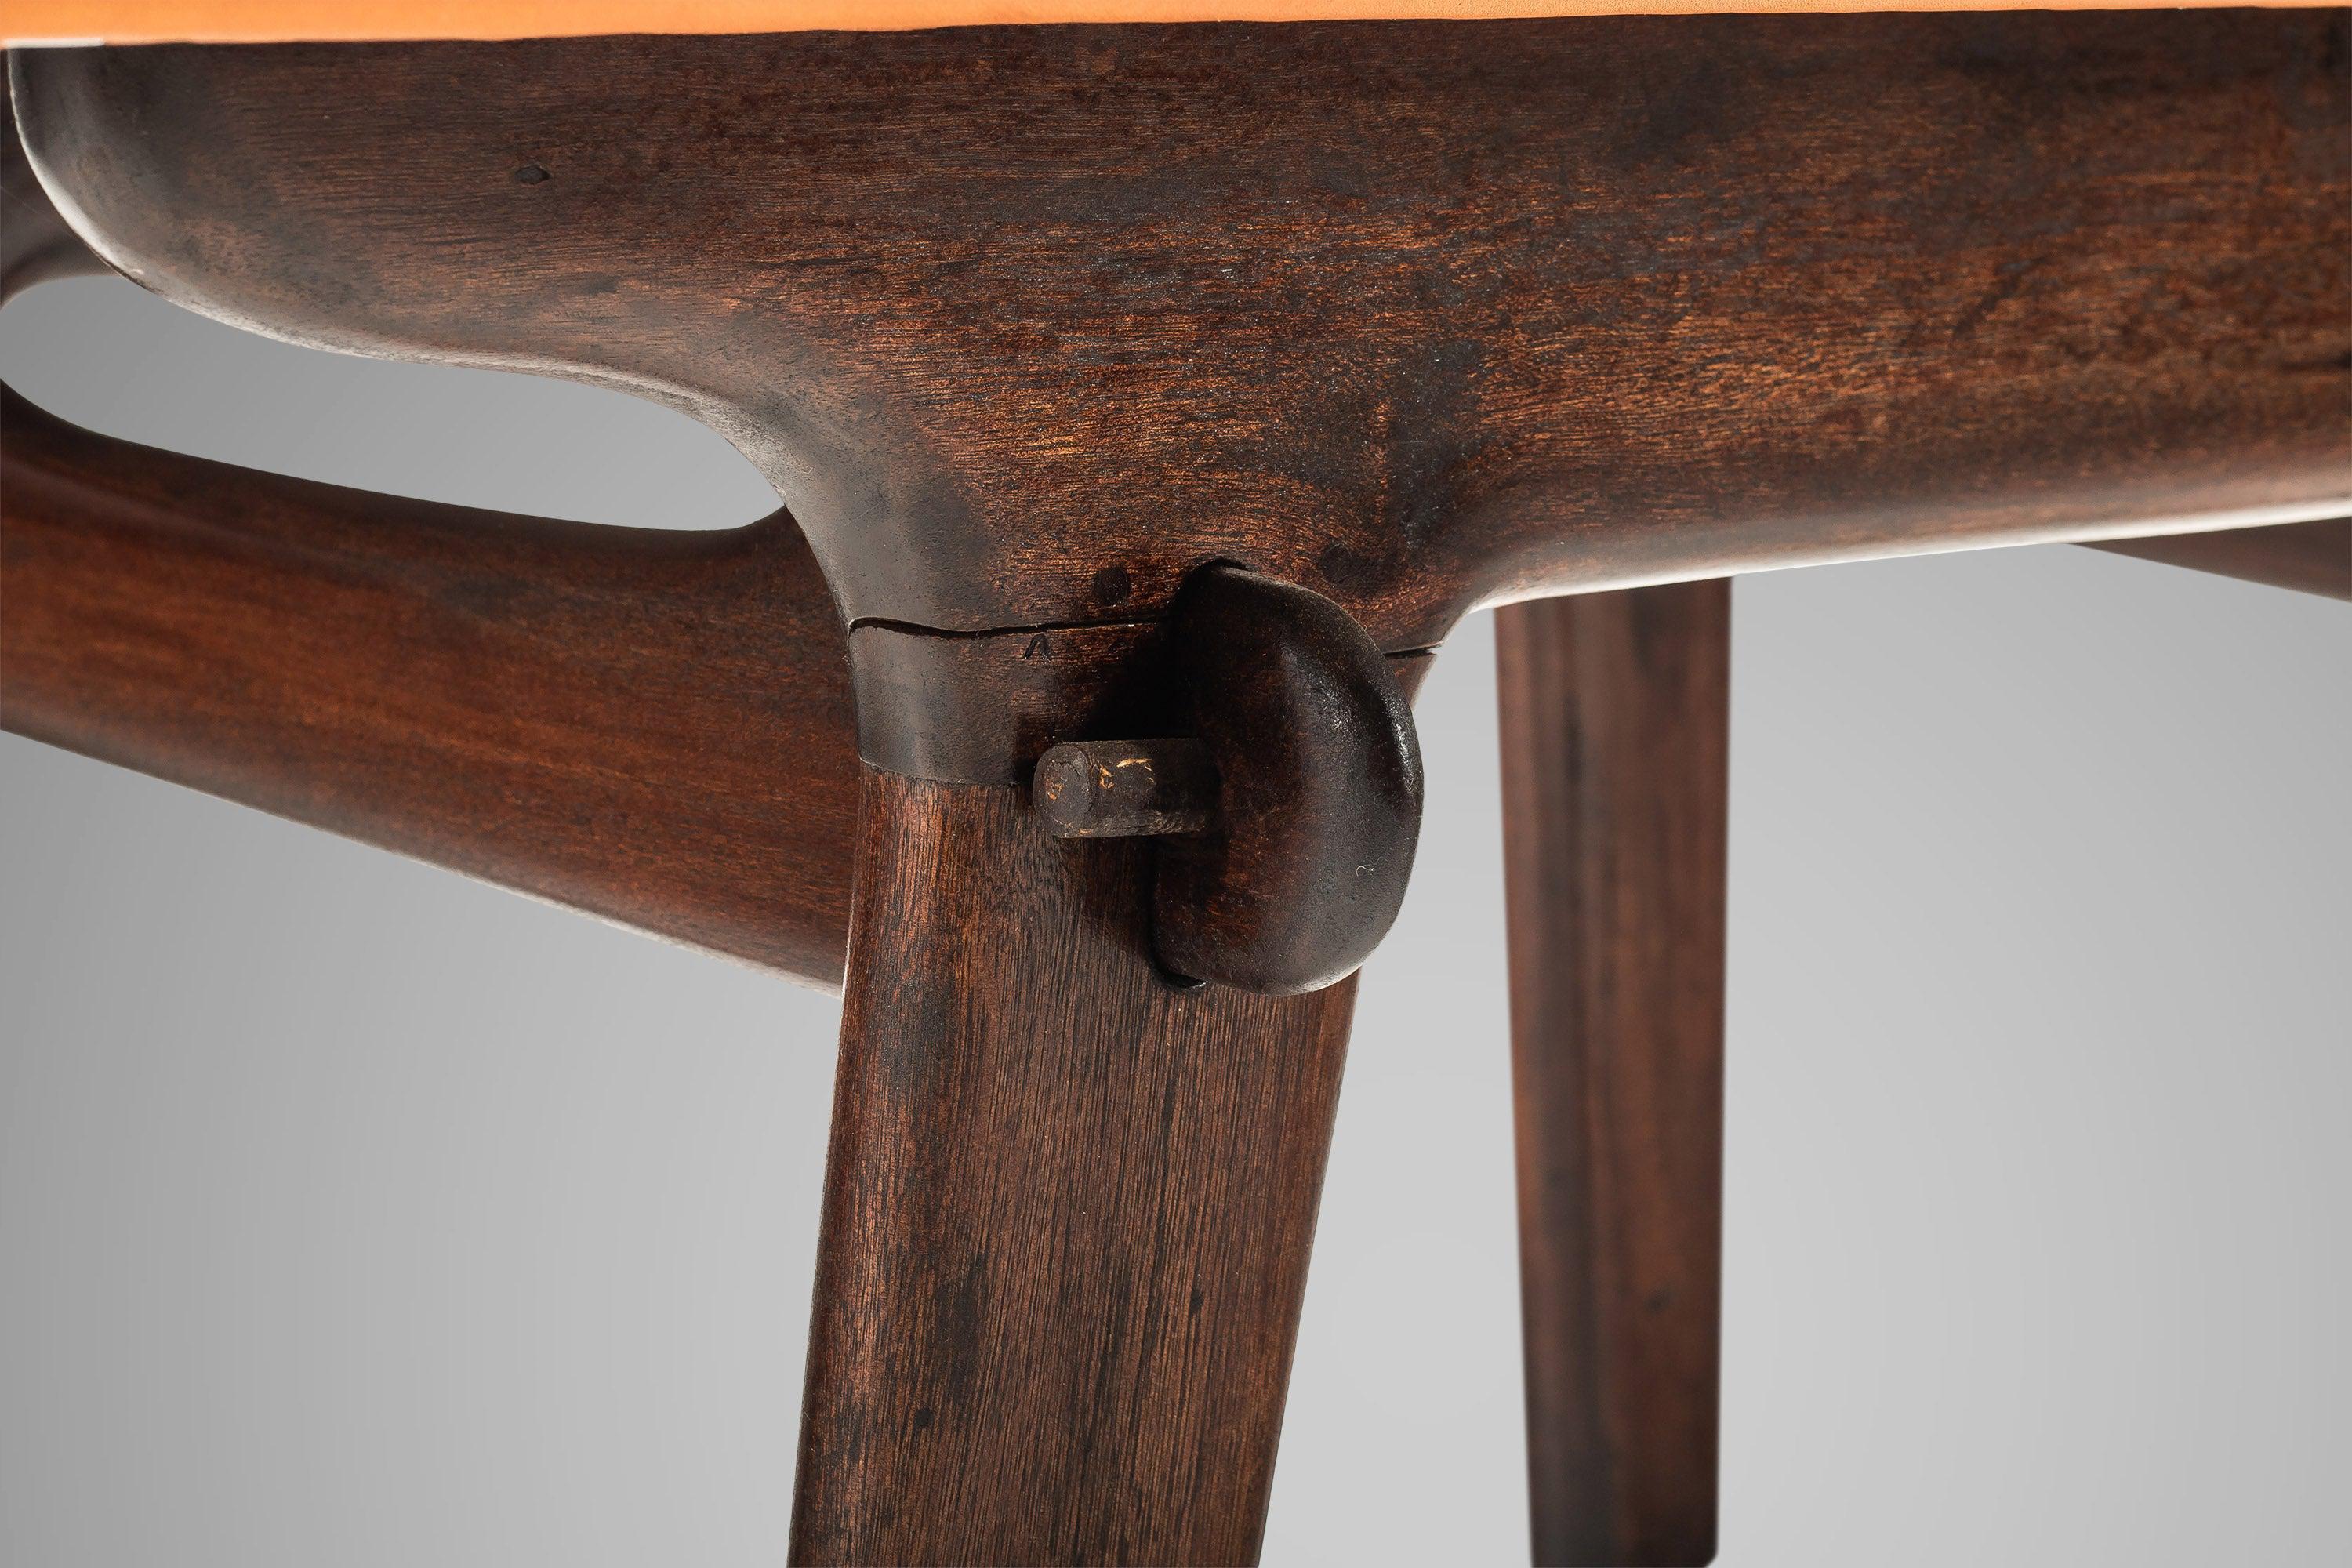 Cette table iconique, conçue par Angel Pazmino, est l'amalgame parfait de la méthode minimaliste espagnole et sud-américaine avec une touche de modernité. Le bois fruitier massif, originaire des jungles d'Amérique du Sud, est parfaitement formé pour